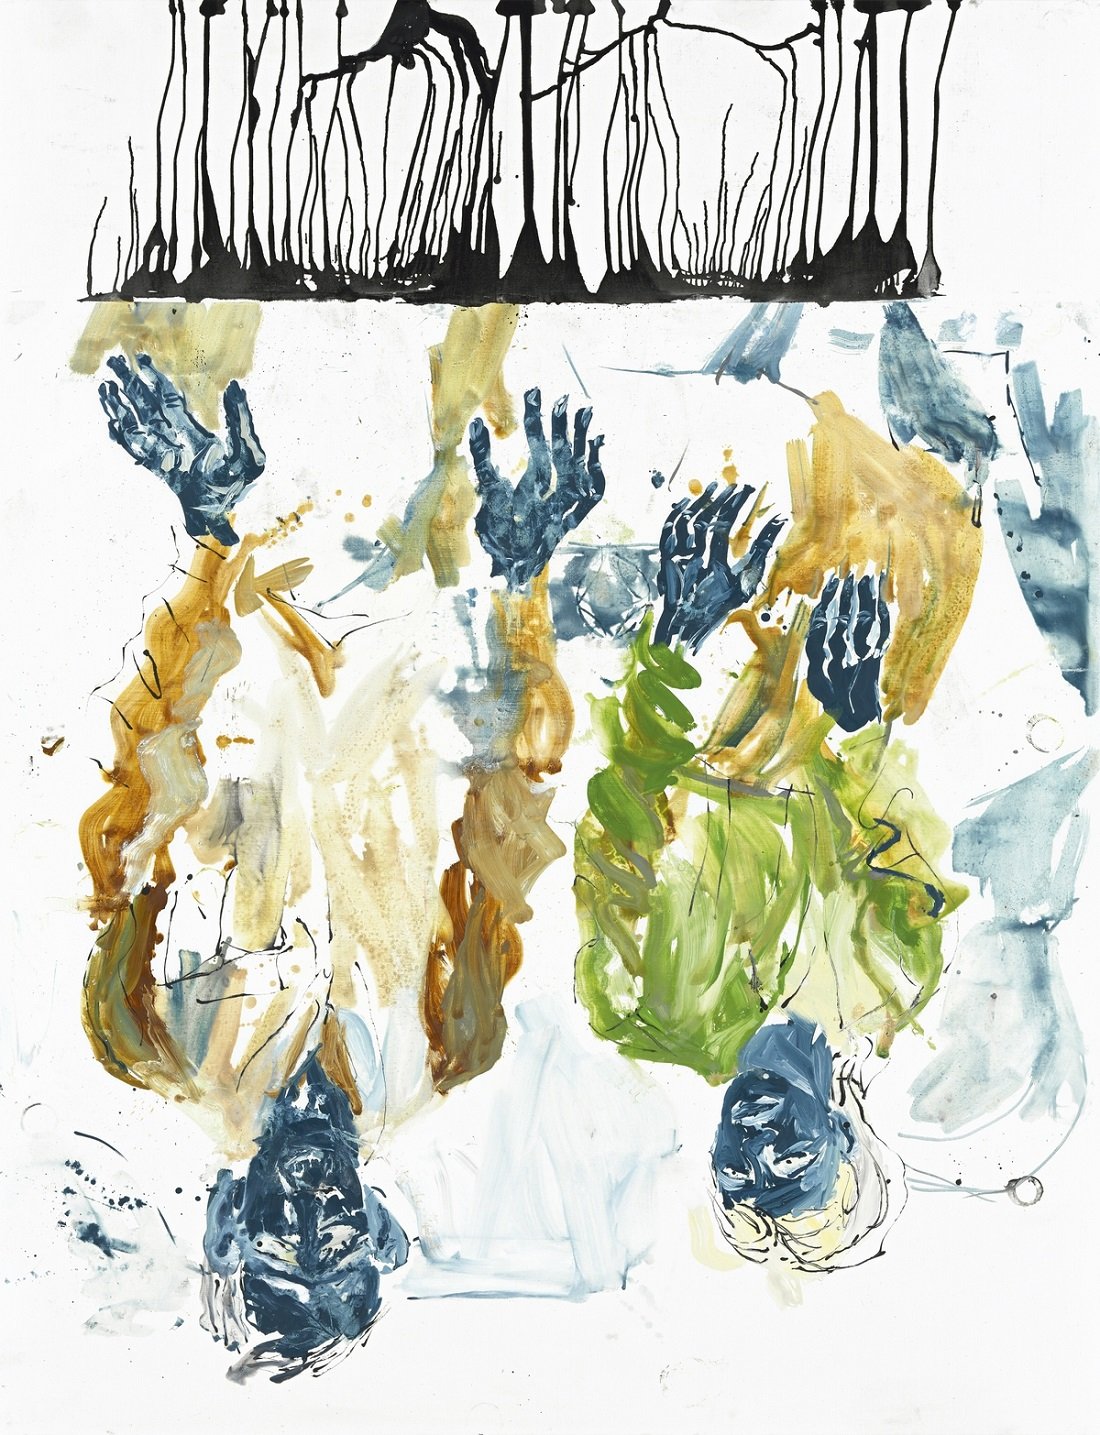 Georg Baselitz, In der Tasse gelesen, das heitere Gelb, 2010, olio su tela, 270x207 cm. Collezione privata, Hong Kong © Georg Baselitz 2021. Photo Jochen Littkemann, Berlino